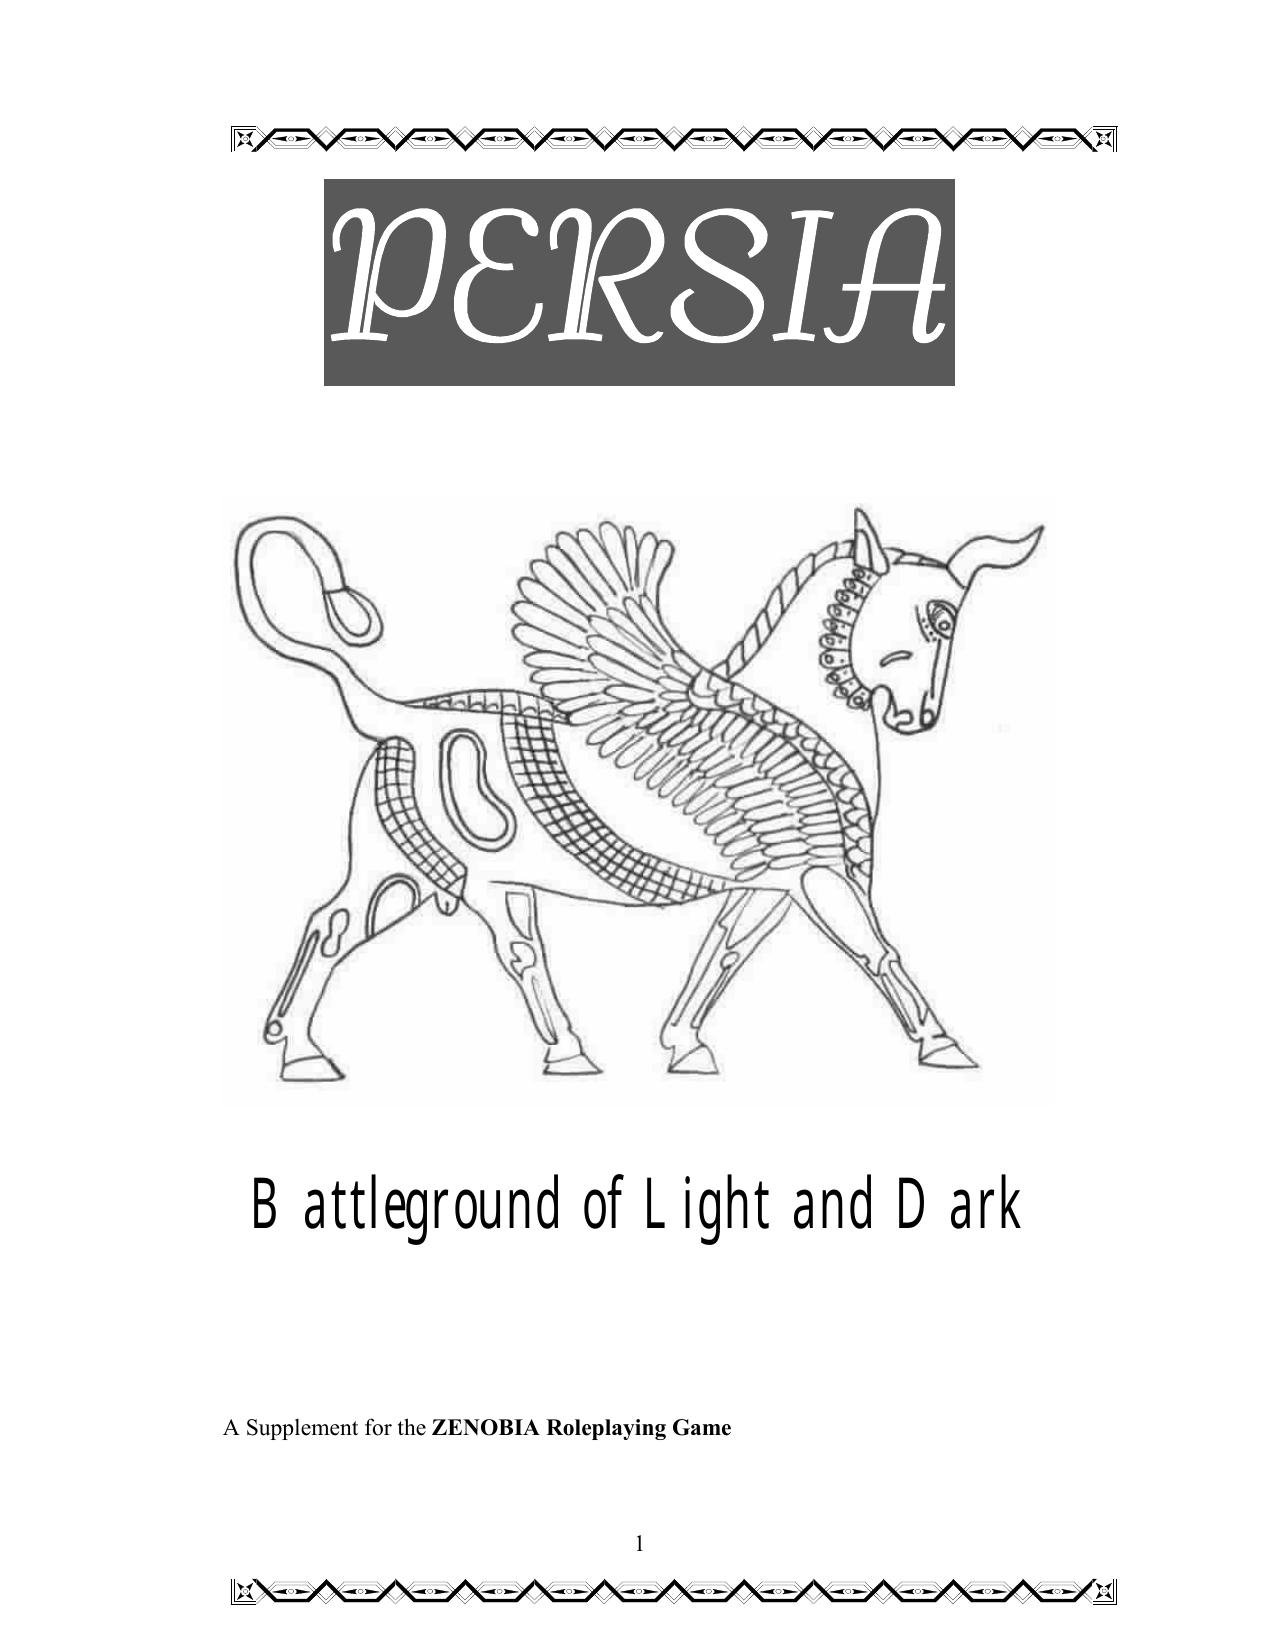 Zenobia Persia Battleground of Light and Dark